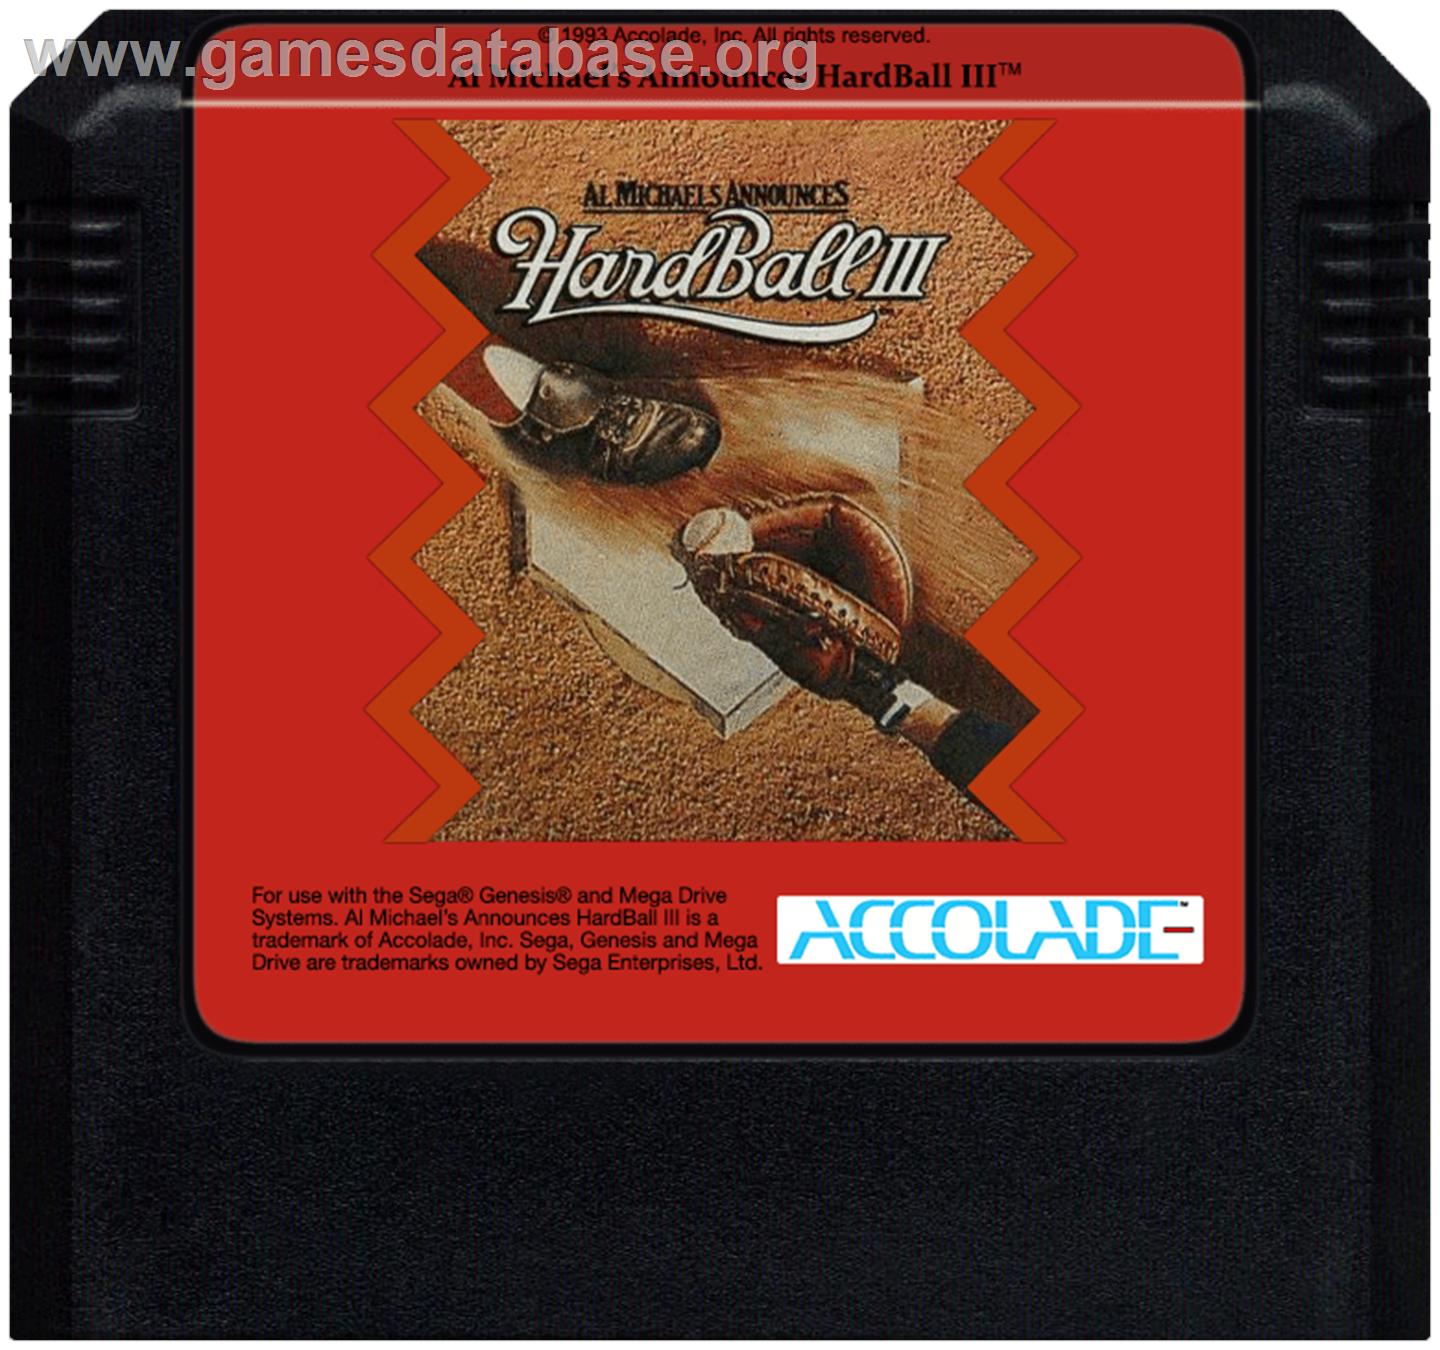 HardBall 3 - Sega Genesis - Artwork - Cartridge